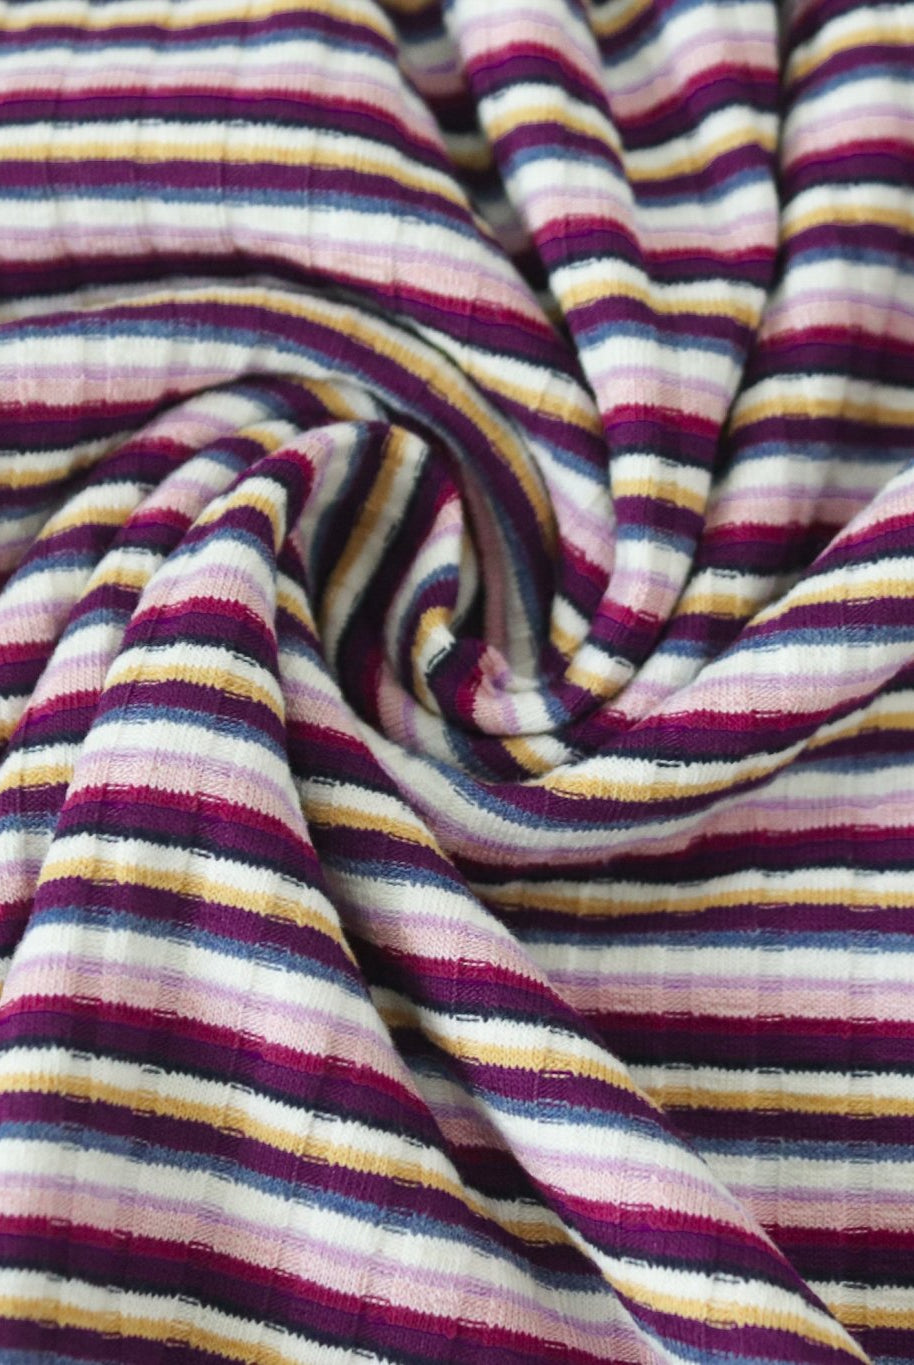 Adalyn Stripes, Rib Knit. RIB-126 - Boho Fabrics